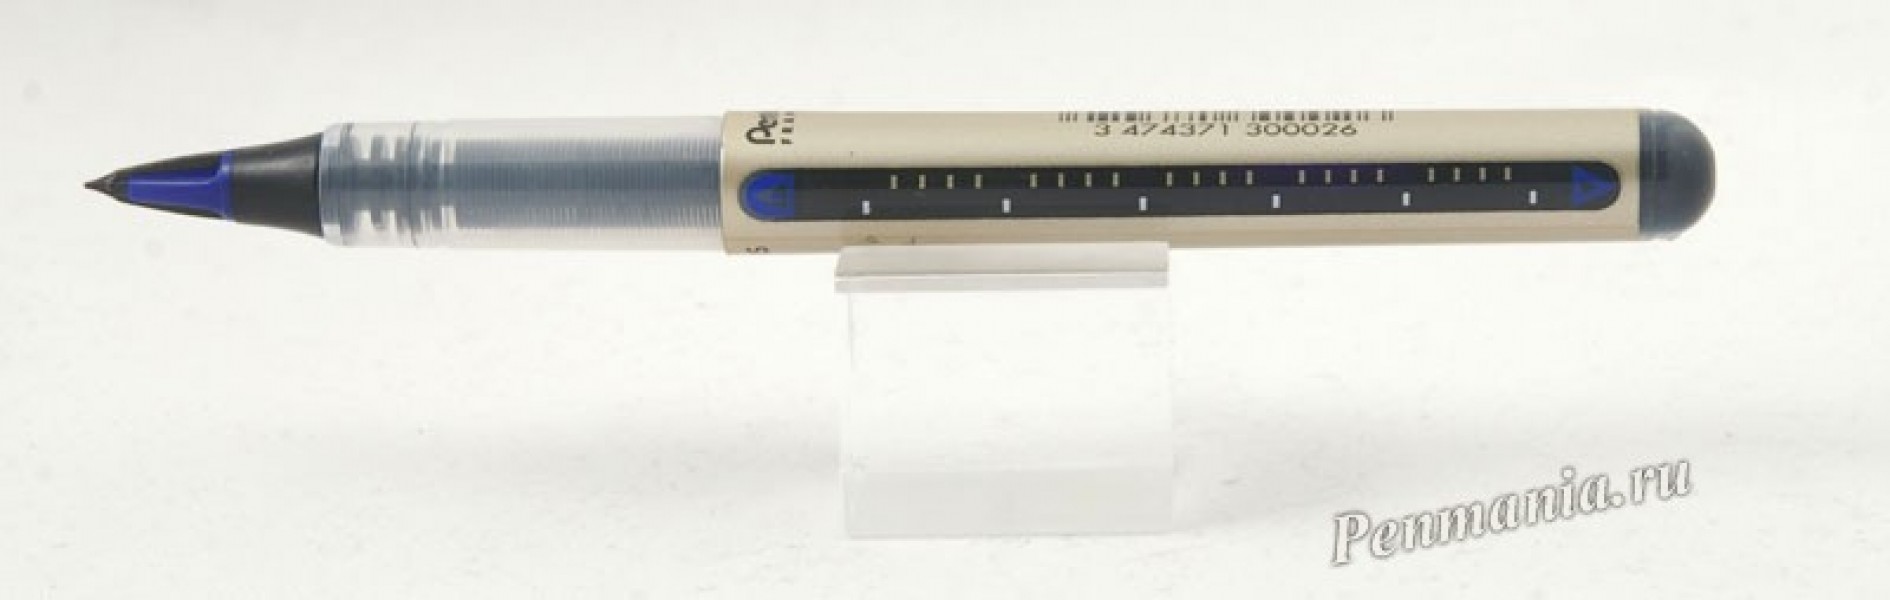 перьевая ручка Pentel JL30 / fountain pen